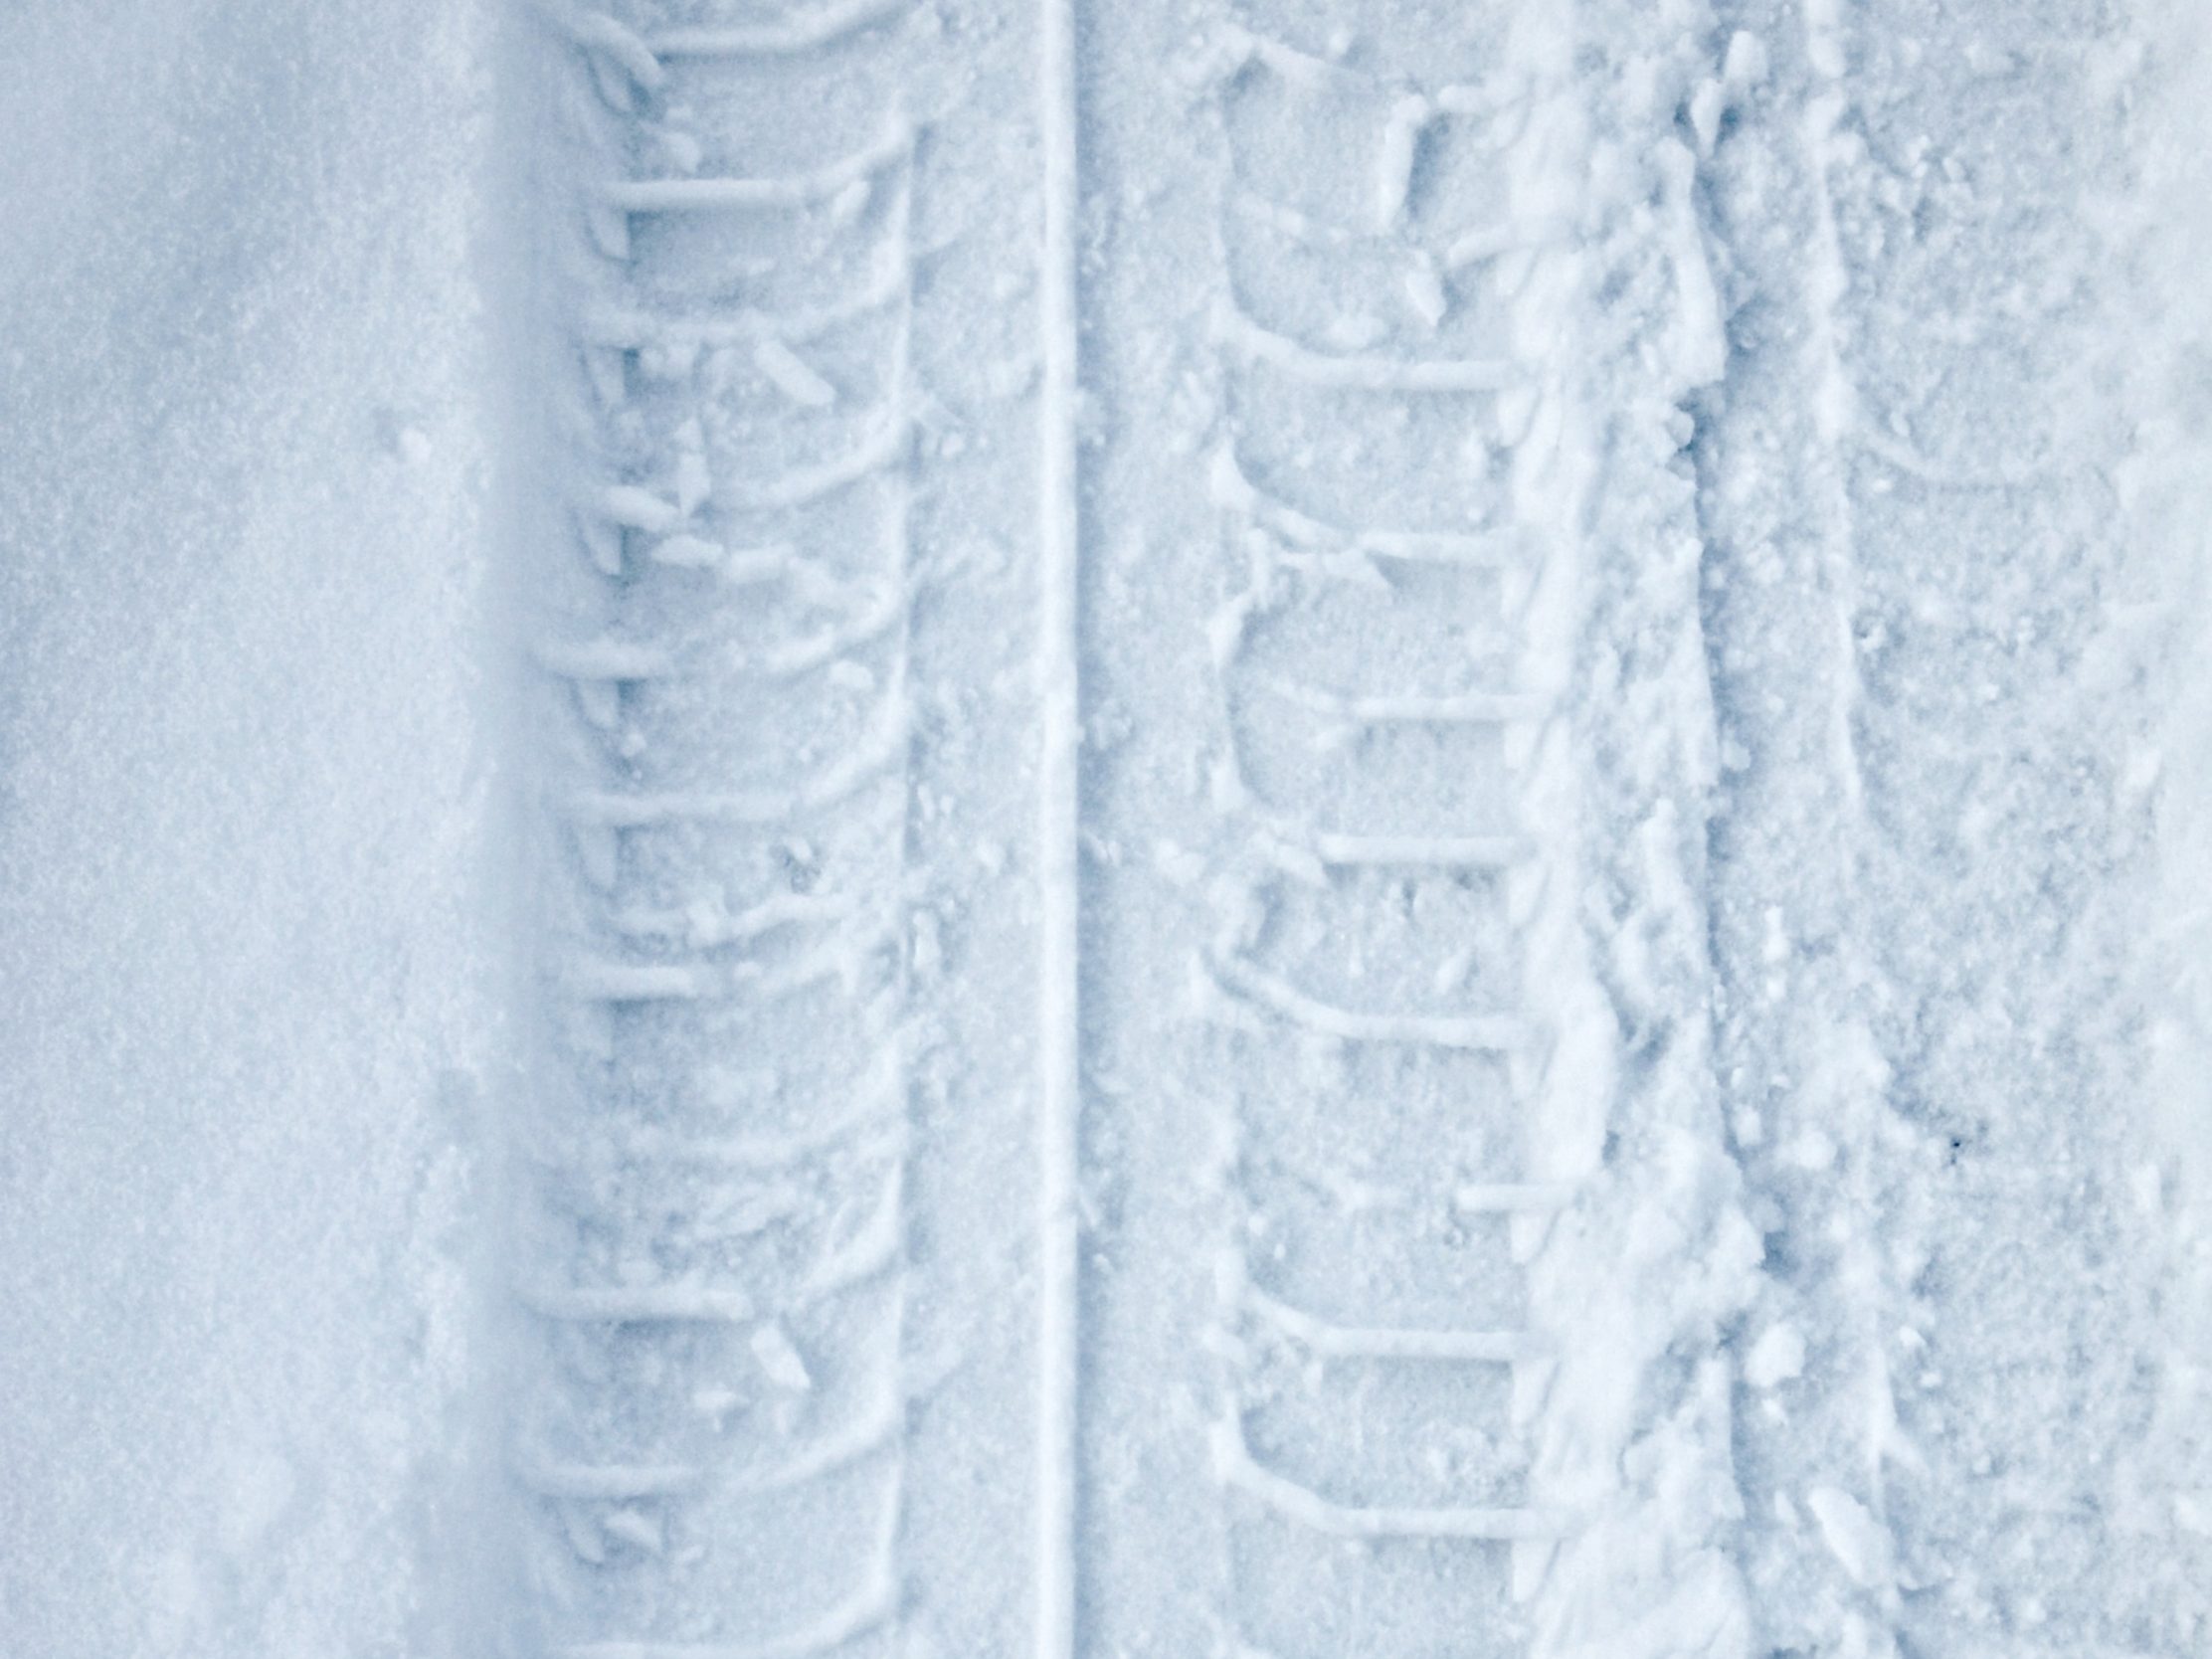 2224x1668 iPad Pro wallpapers Tyre Track Snow Winter iPad Wallpaper 2224x1668 pixels resolution